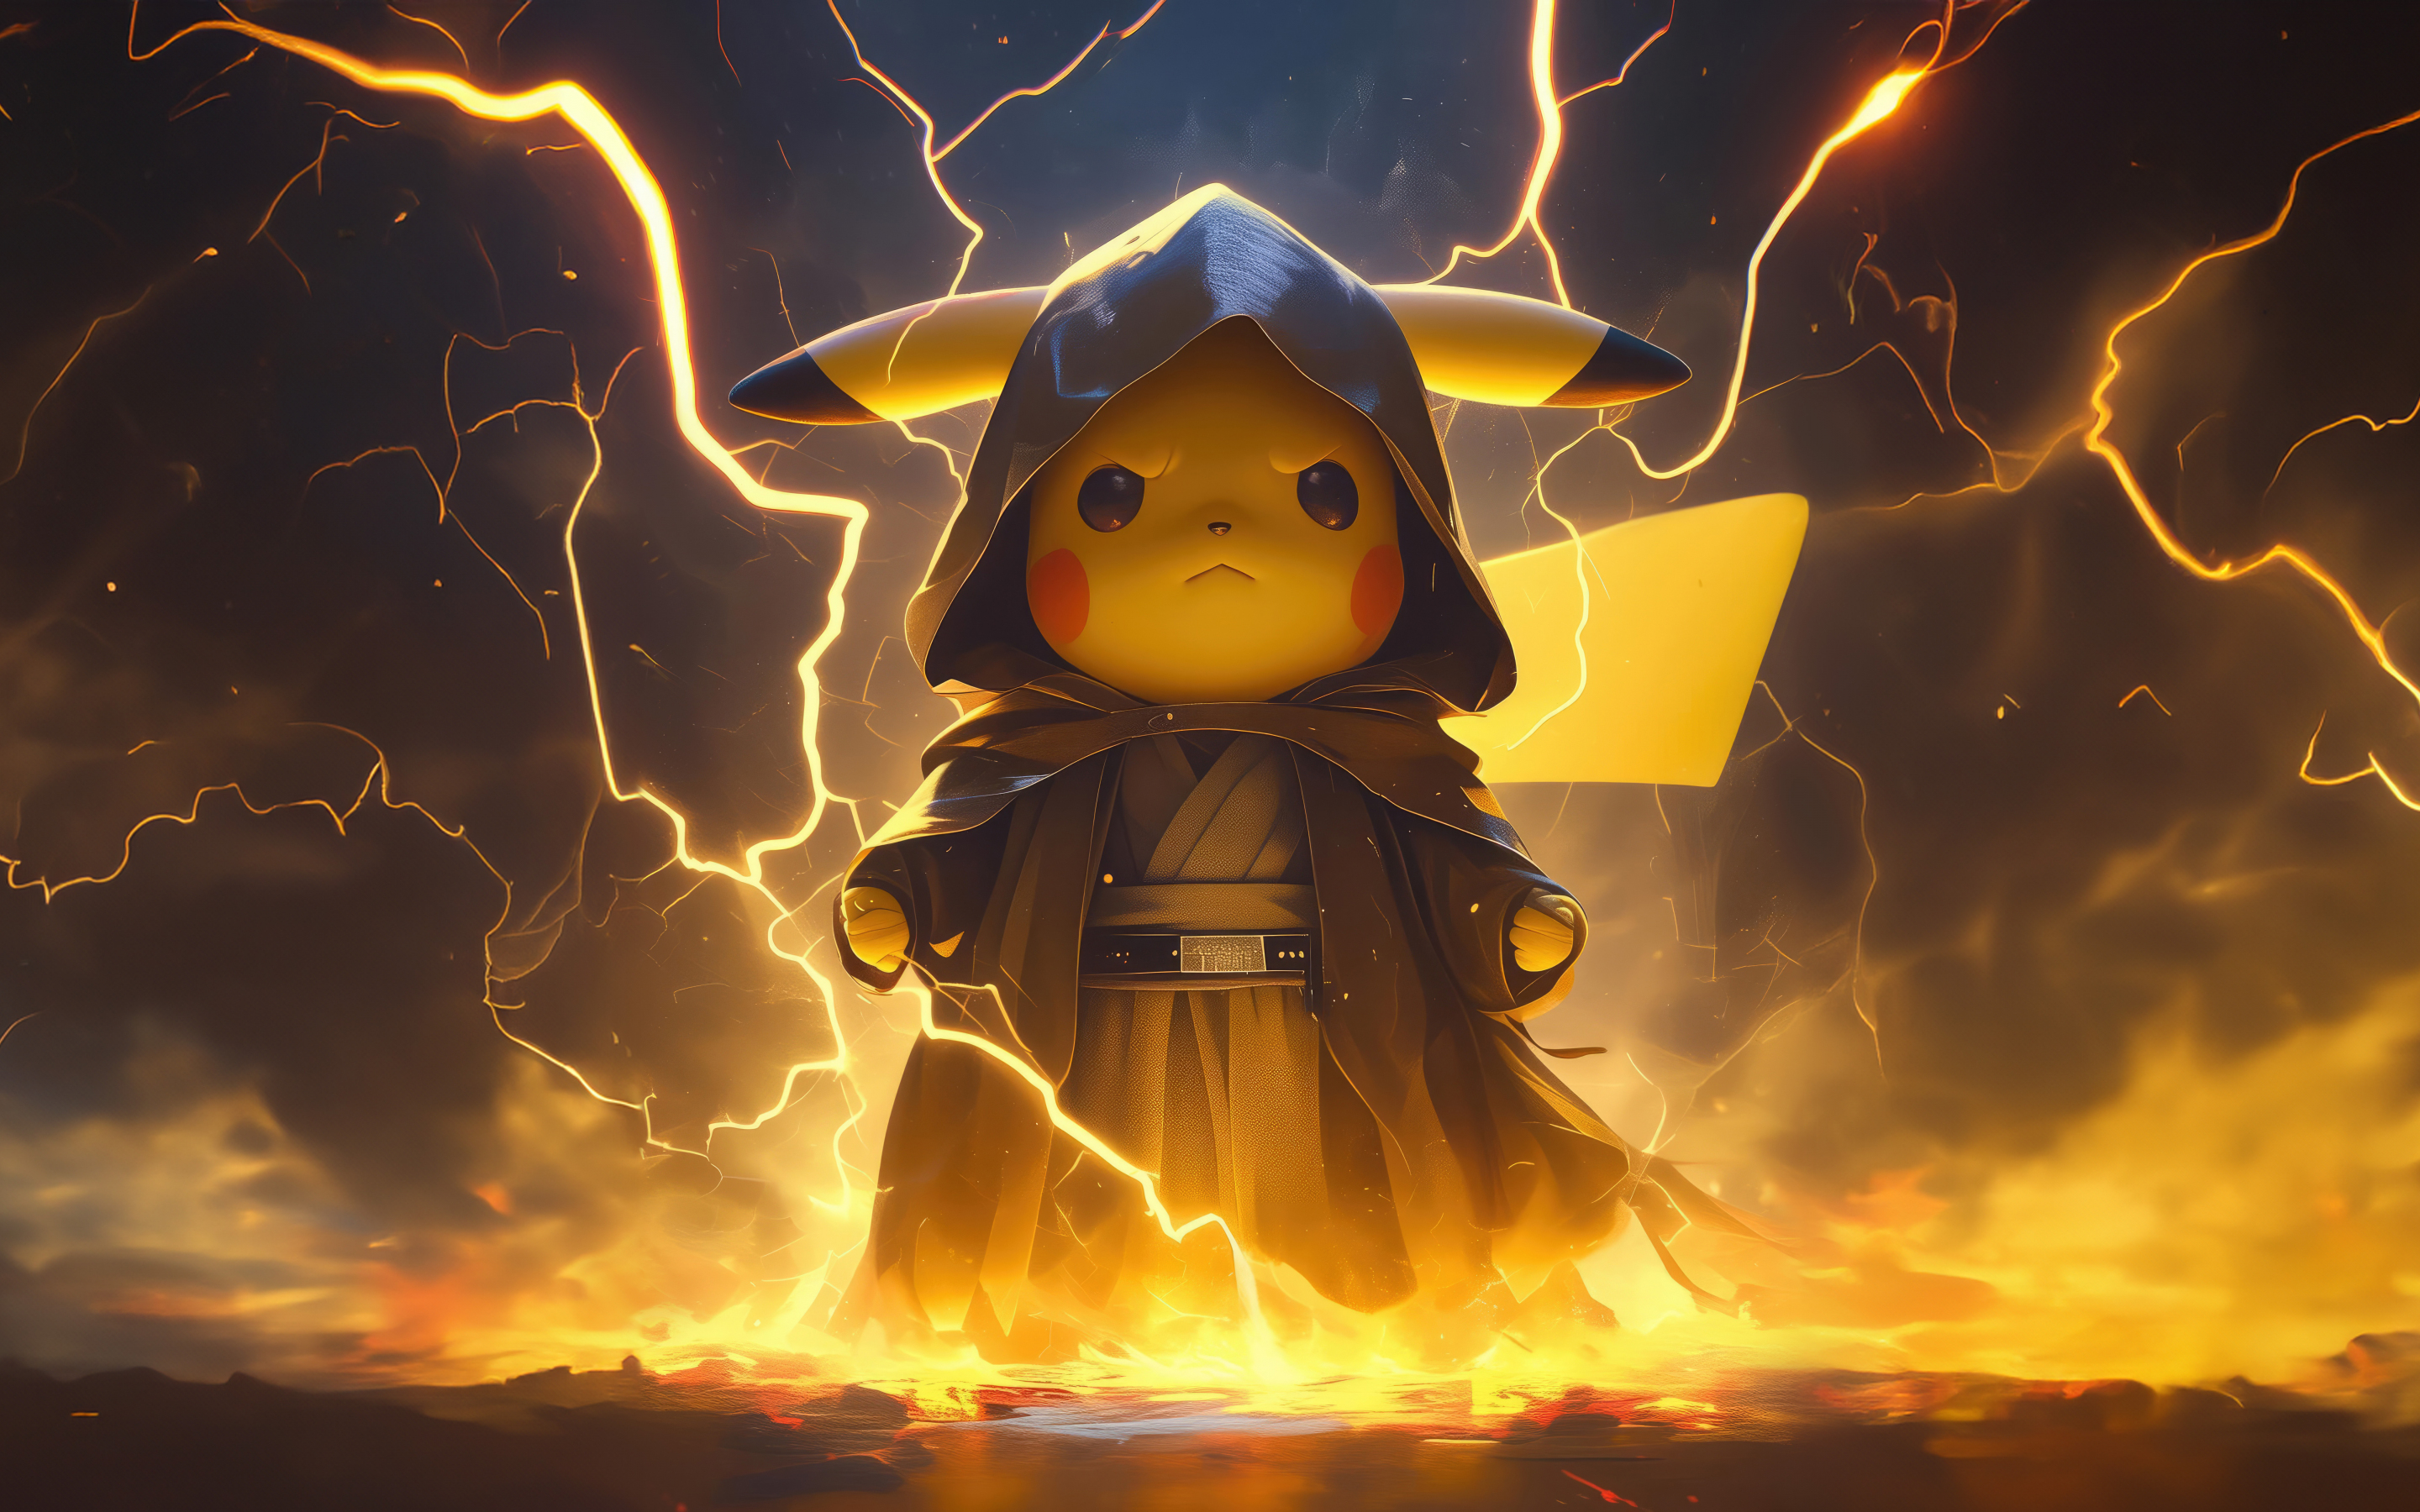 Pikachu as sithlord, Pokemon, art, 2880x1800 wallpaper